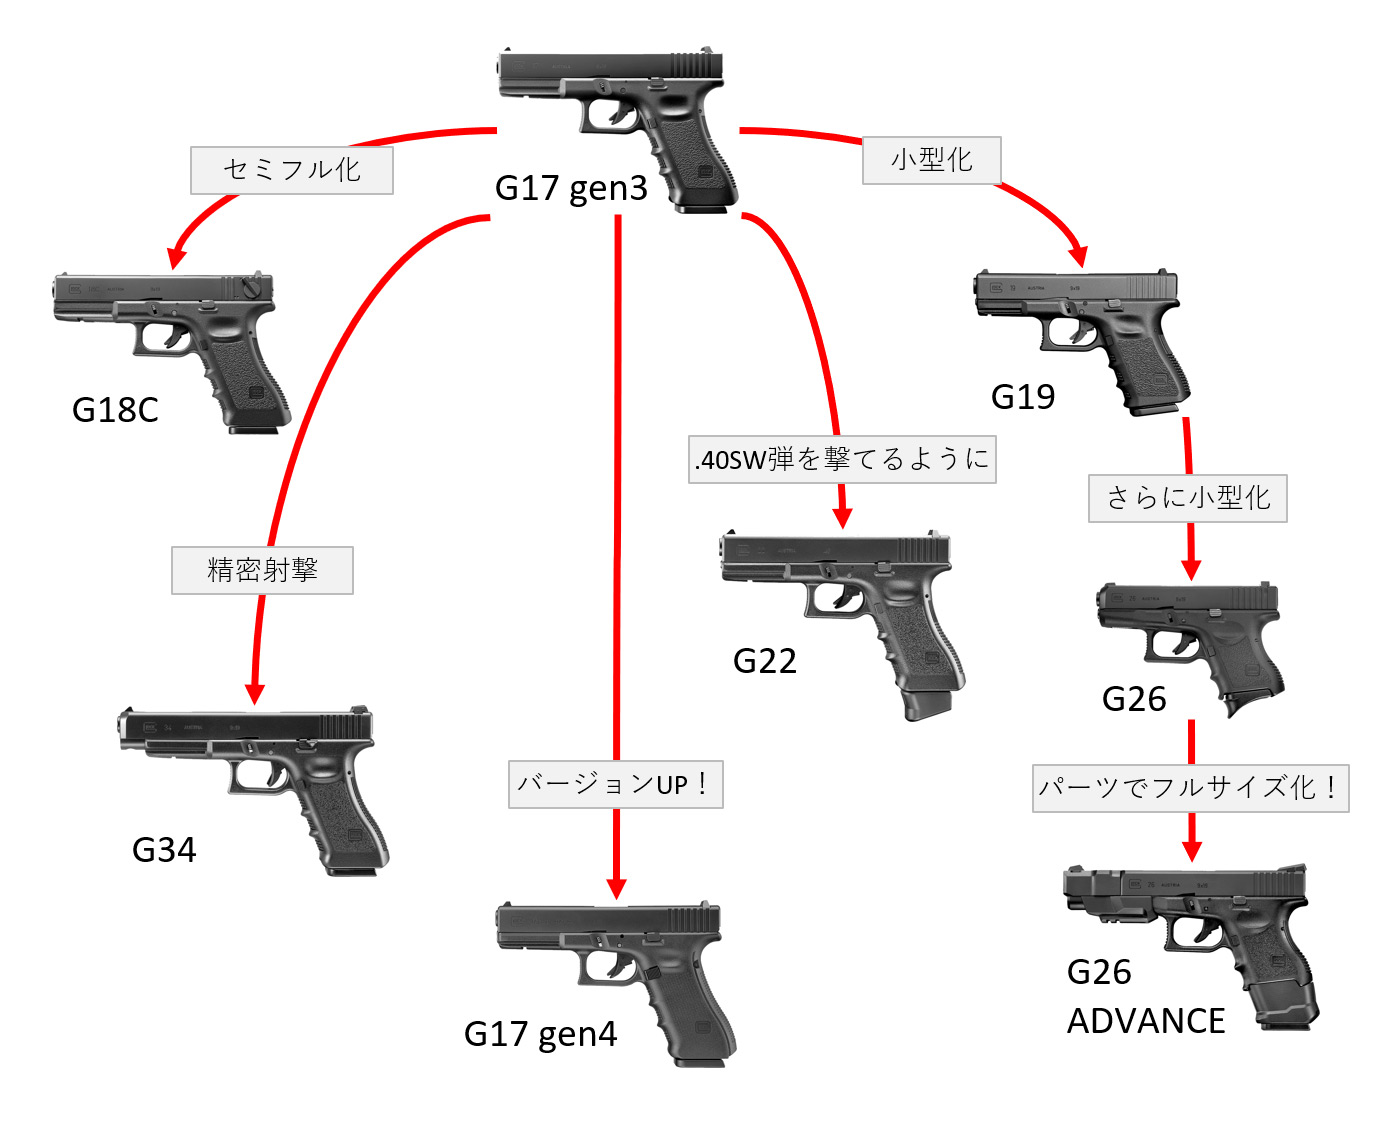 ガスブロ グロック Glock の系統